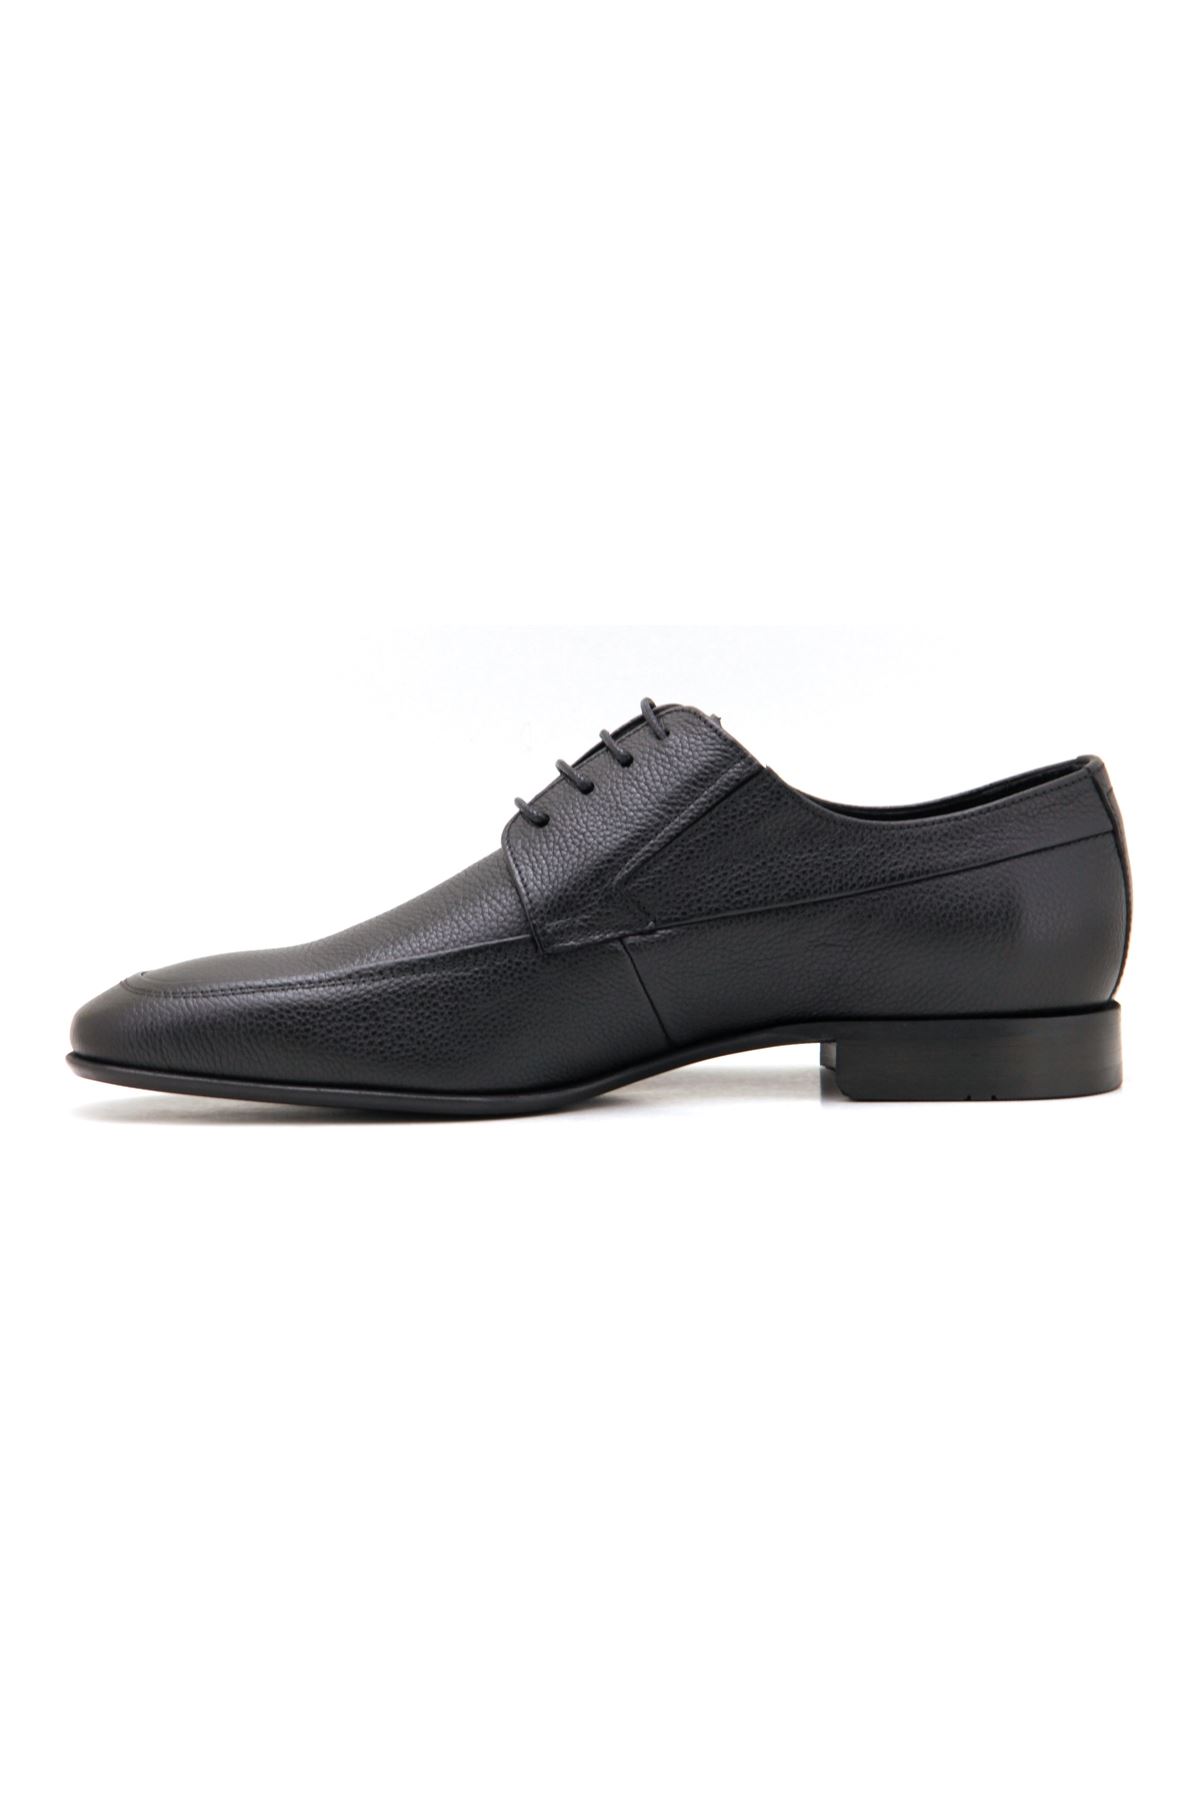 Libero 3717 Klasik Erkek Ayakkabı - Siyah